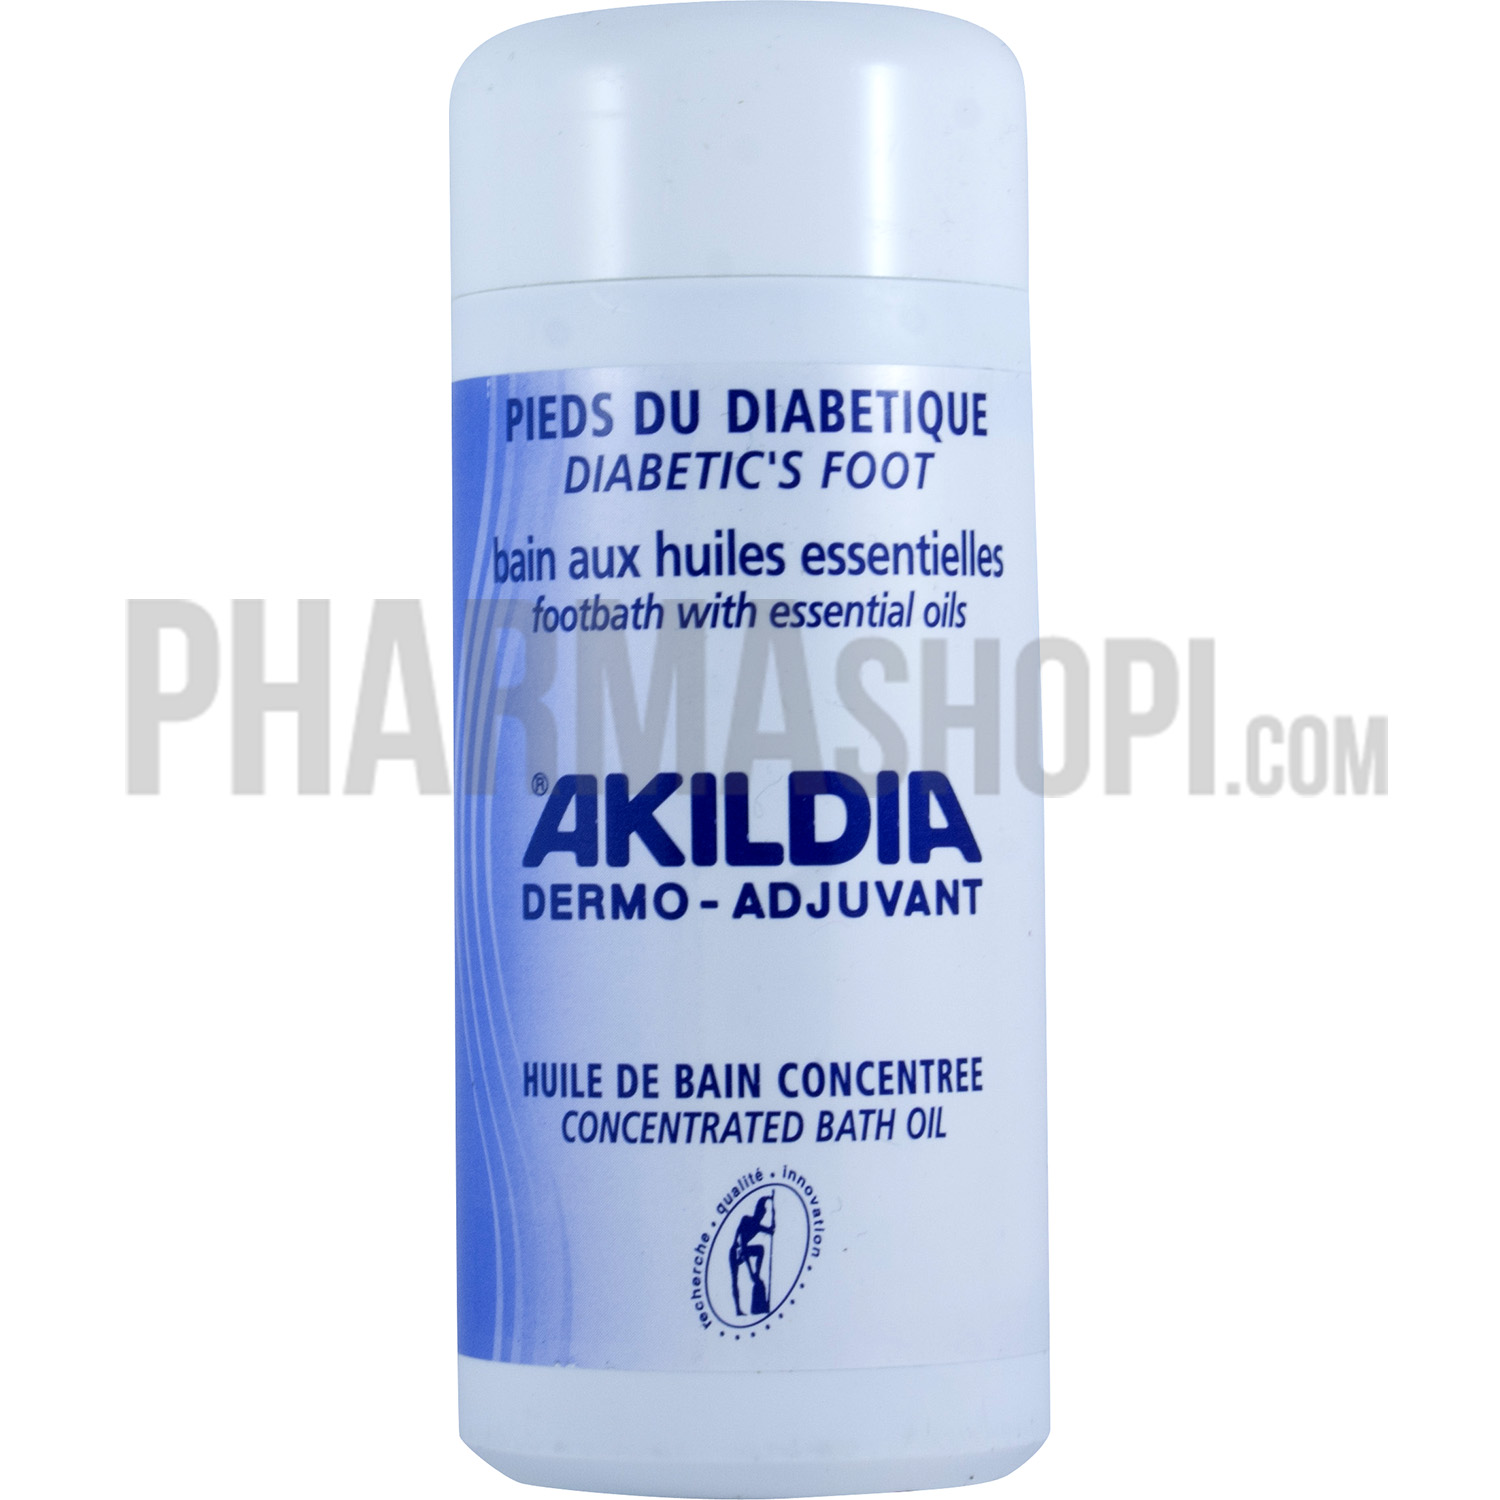 Bains aux huiles essentielles Akildia pieds du diabétique - flacon de 150 ml